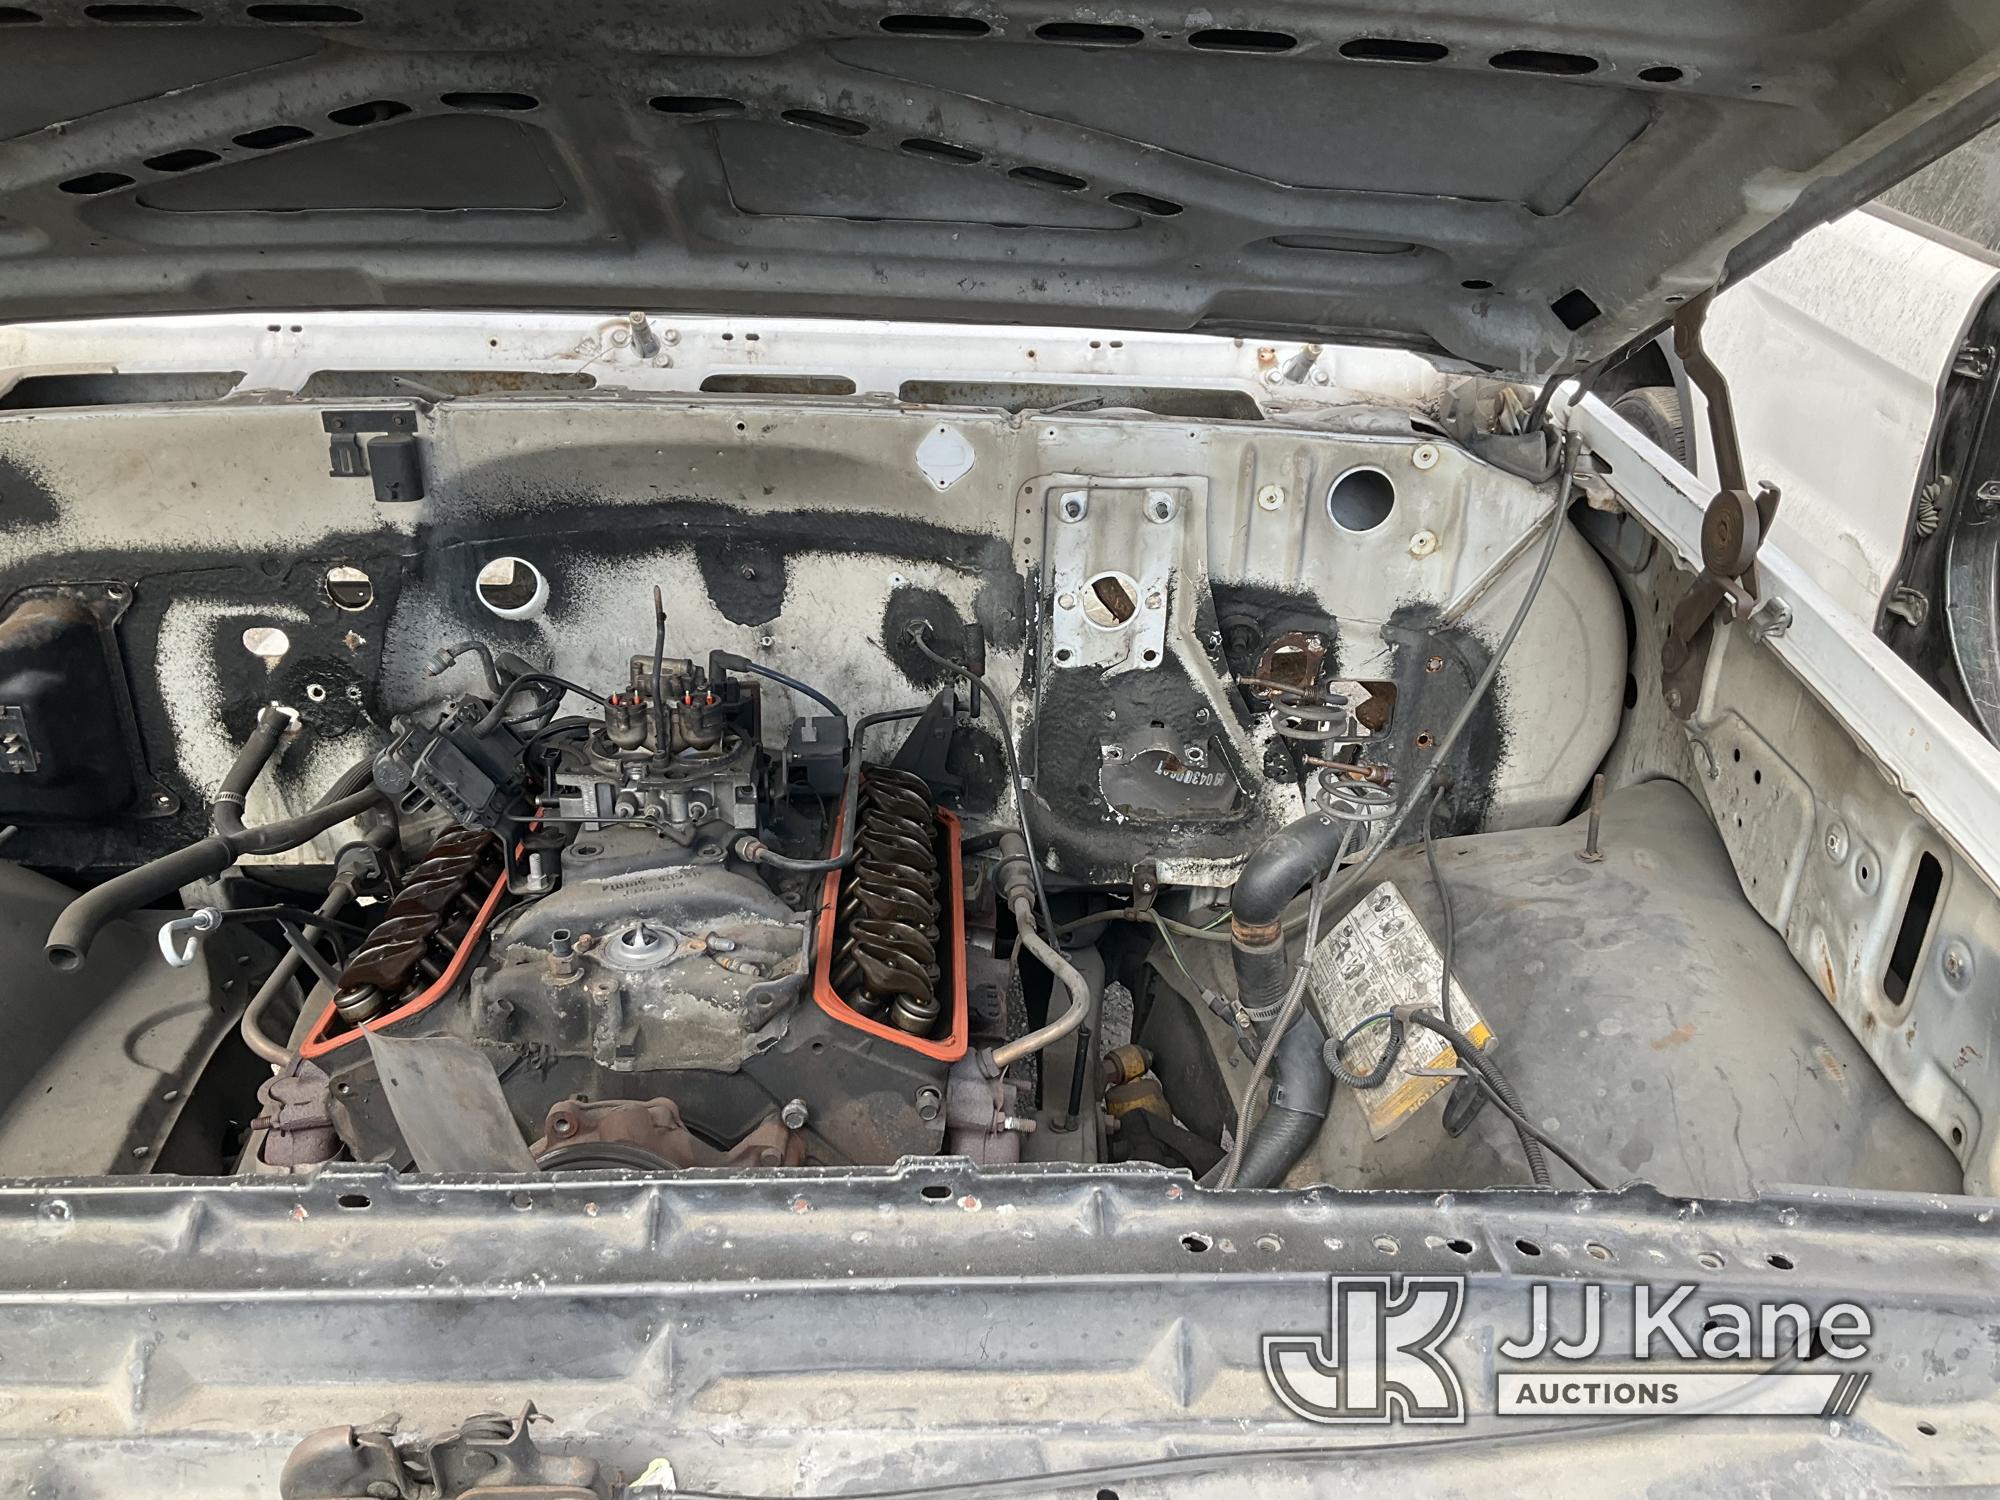 (Jurupa Valley, CA) 1987 Chevrolet R20 Regular Cab Pickup 2-DR Not Running, Interior Stripped Of Par